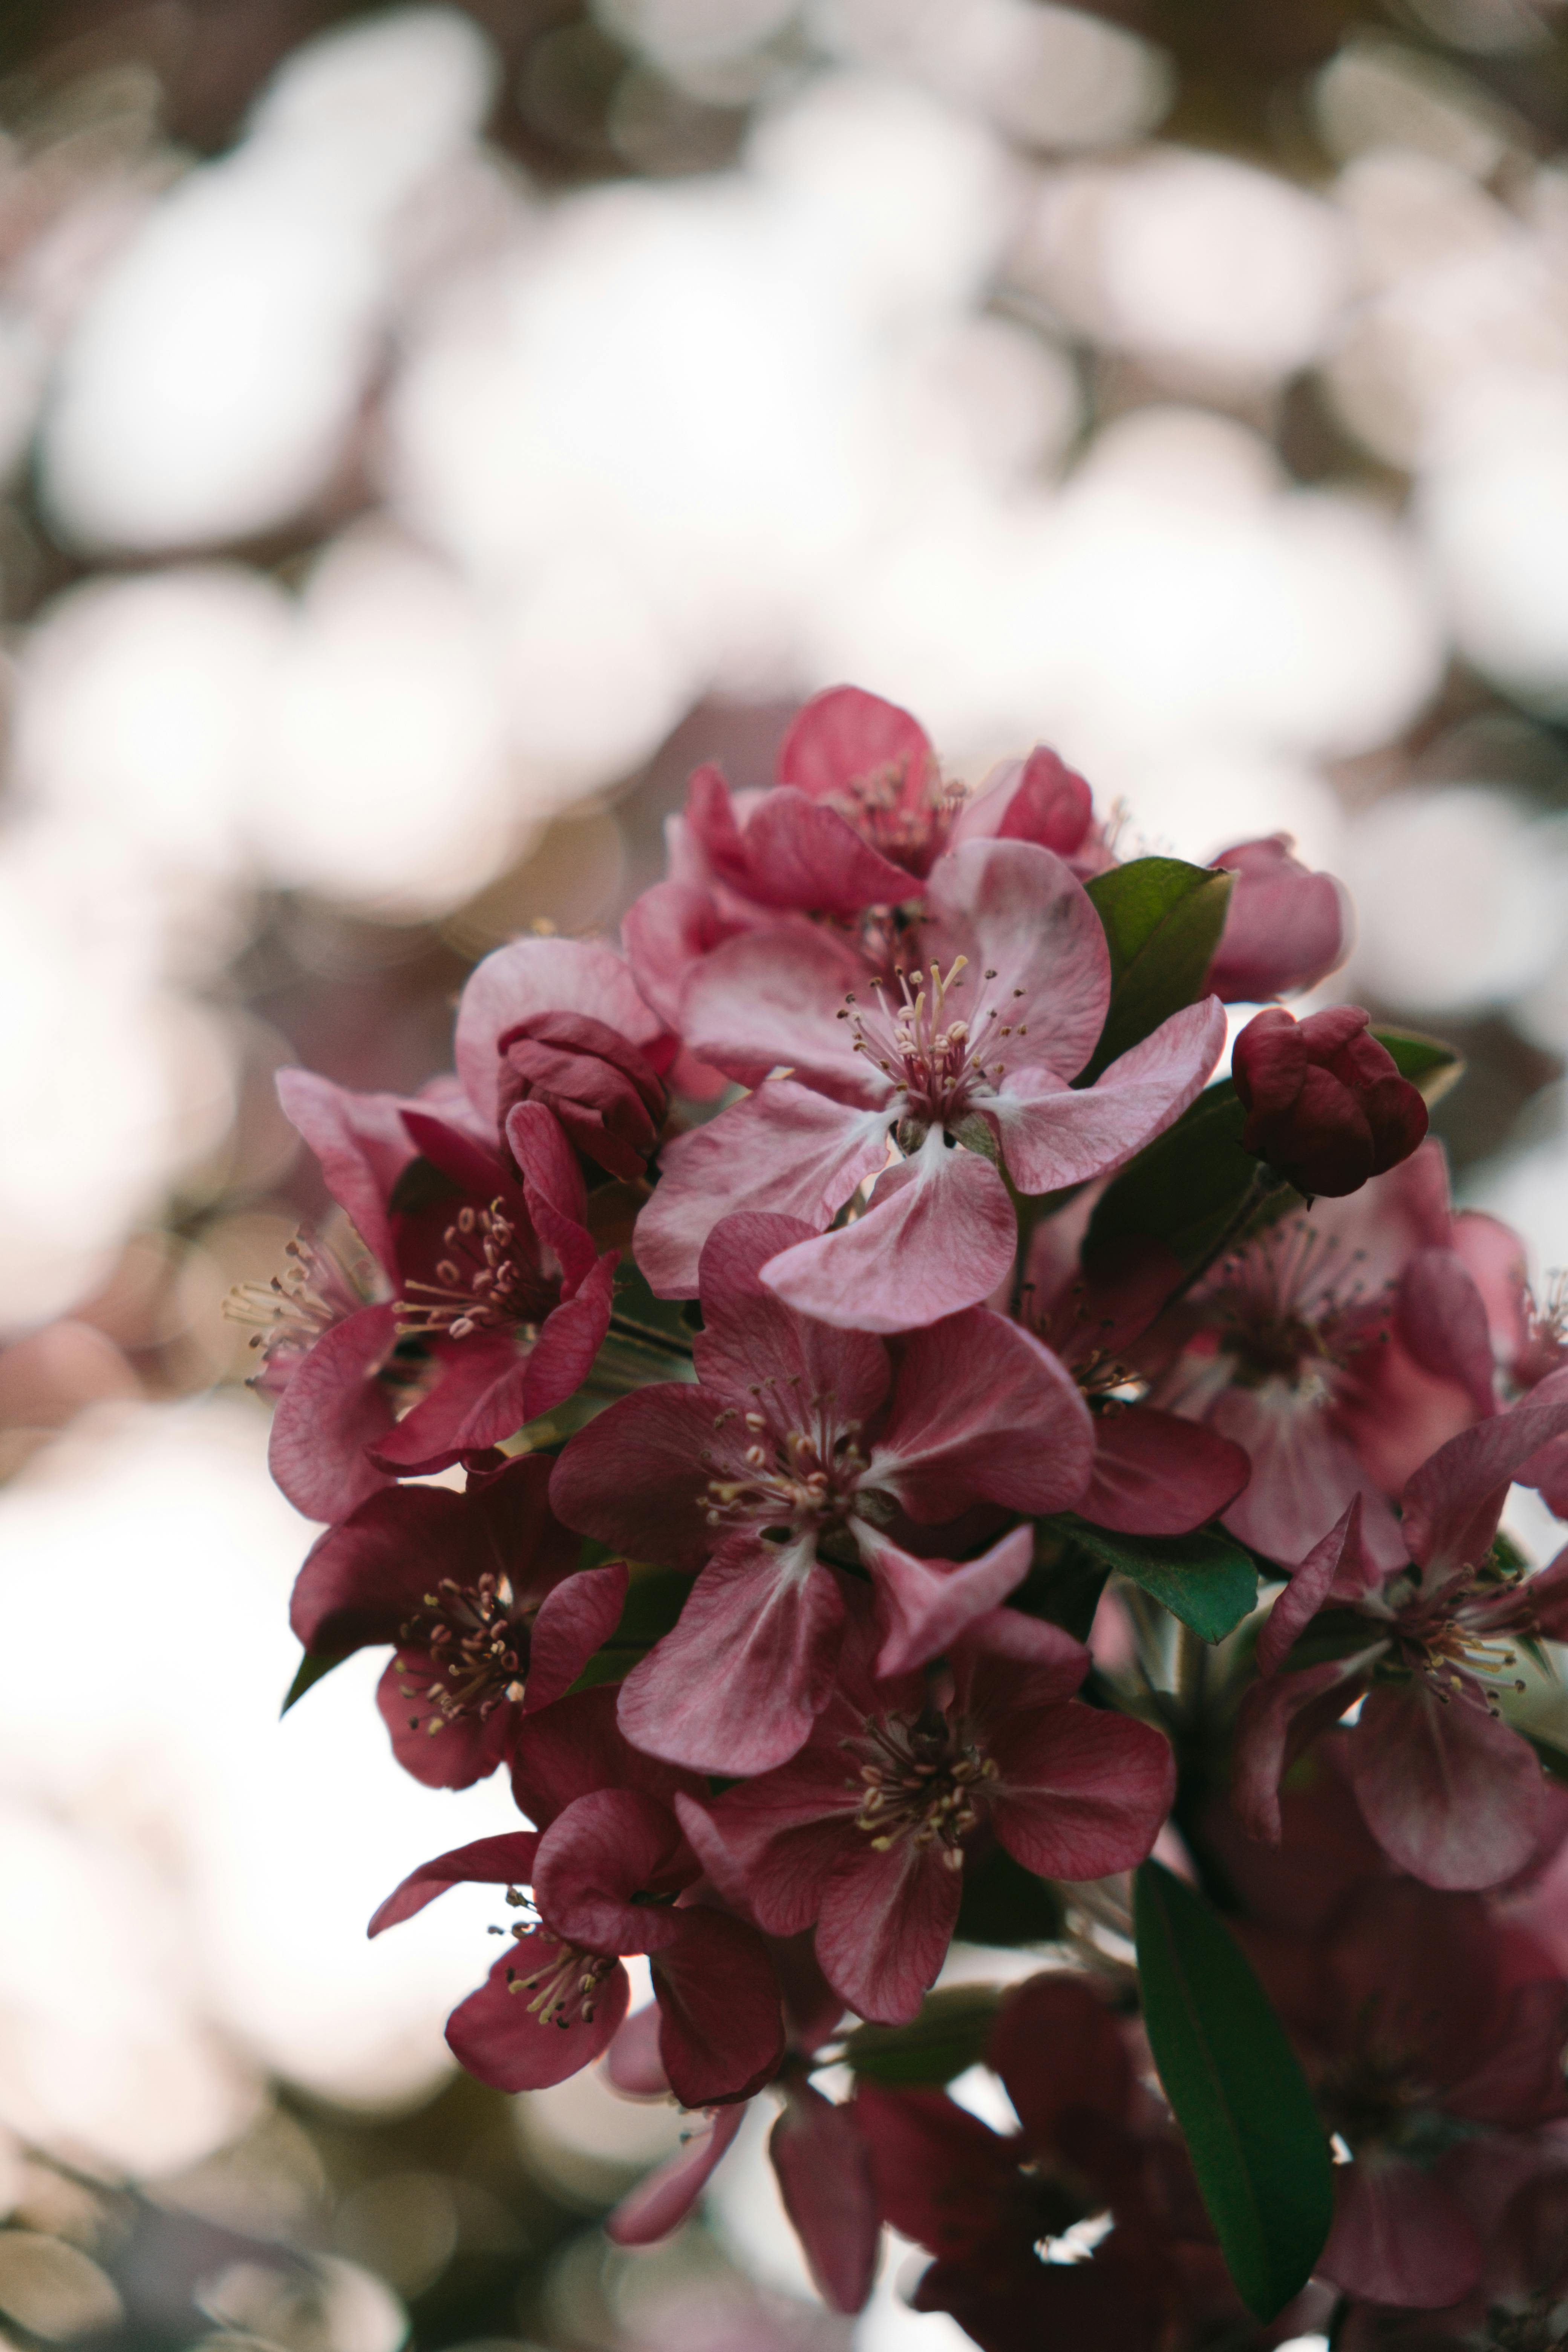 70 Hình ảnh hoa anh đào đẹp nhất Nhật Bản cho điện thoại PC